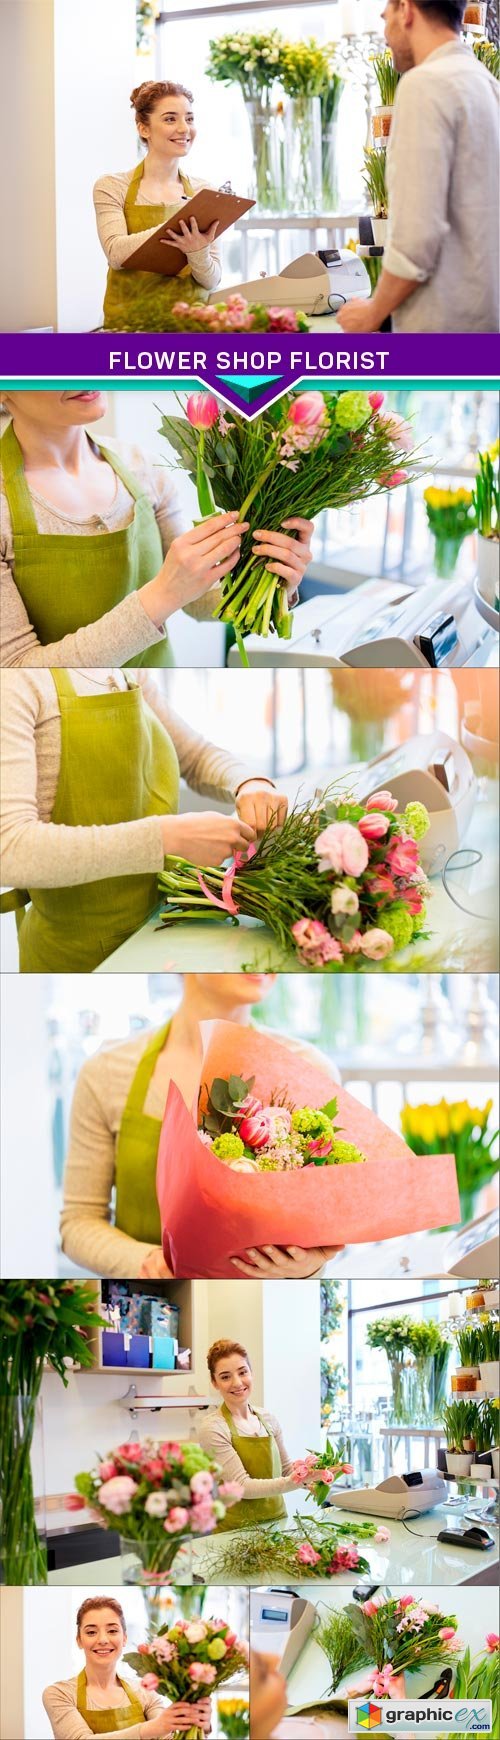 Flower Shop Florist 7x JPEG